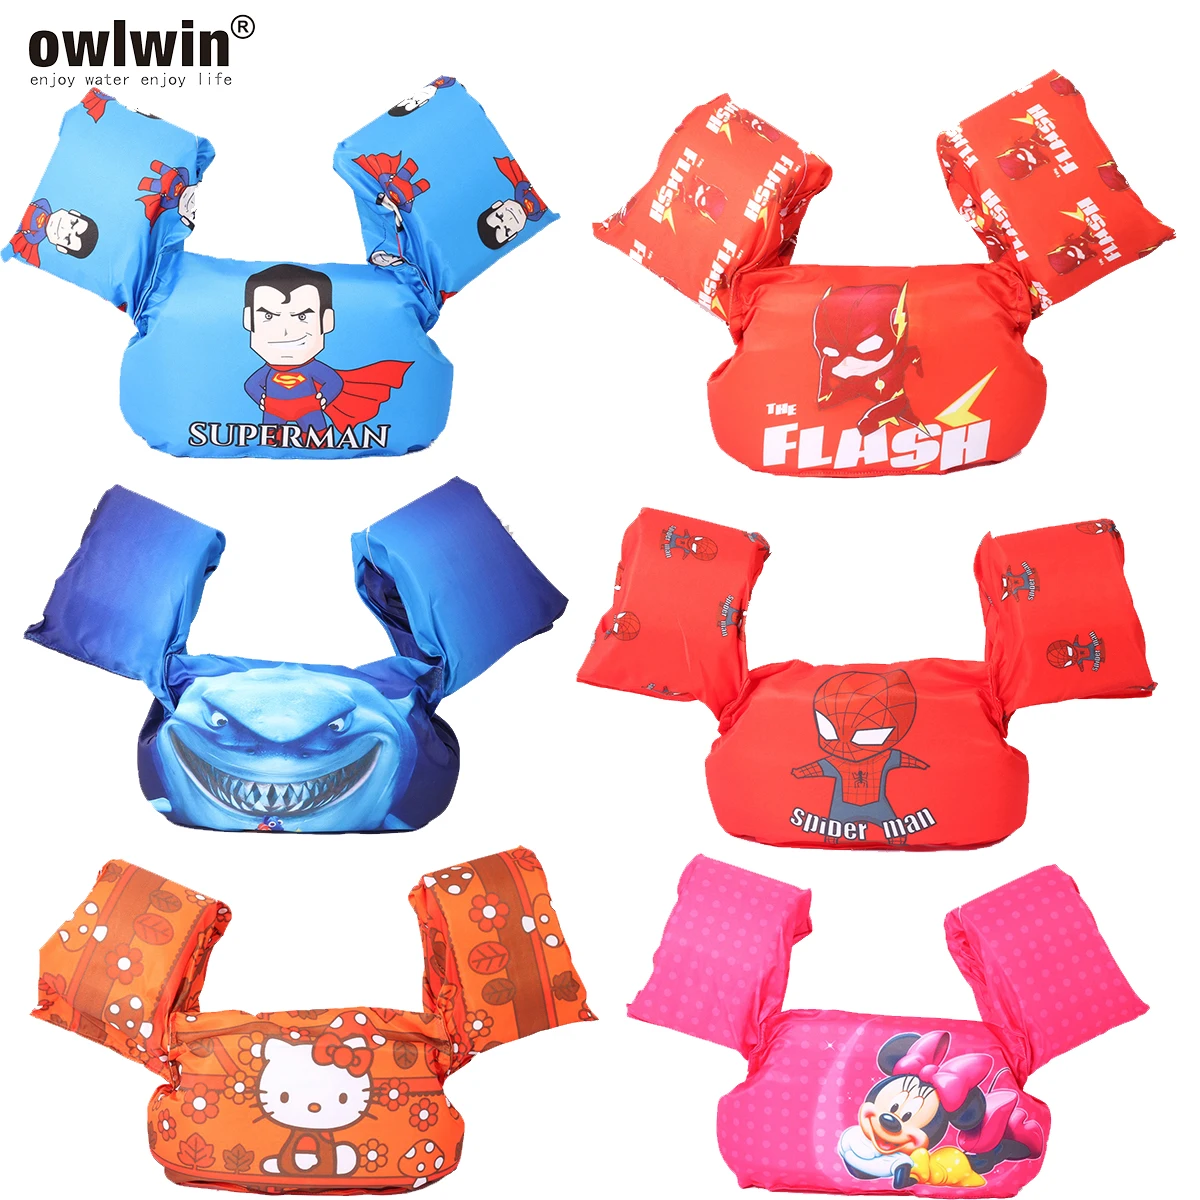 Owlwin puddle jumper, детский спасательный жилет, спасательный жилет, детский купальник, купальный костюм, 14-25 кг, Детские Кольца для рук, плавающие, пена, безопасные плавательные кольца